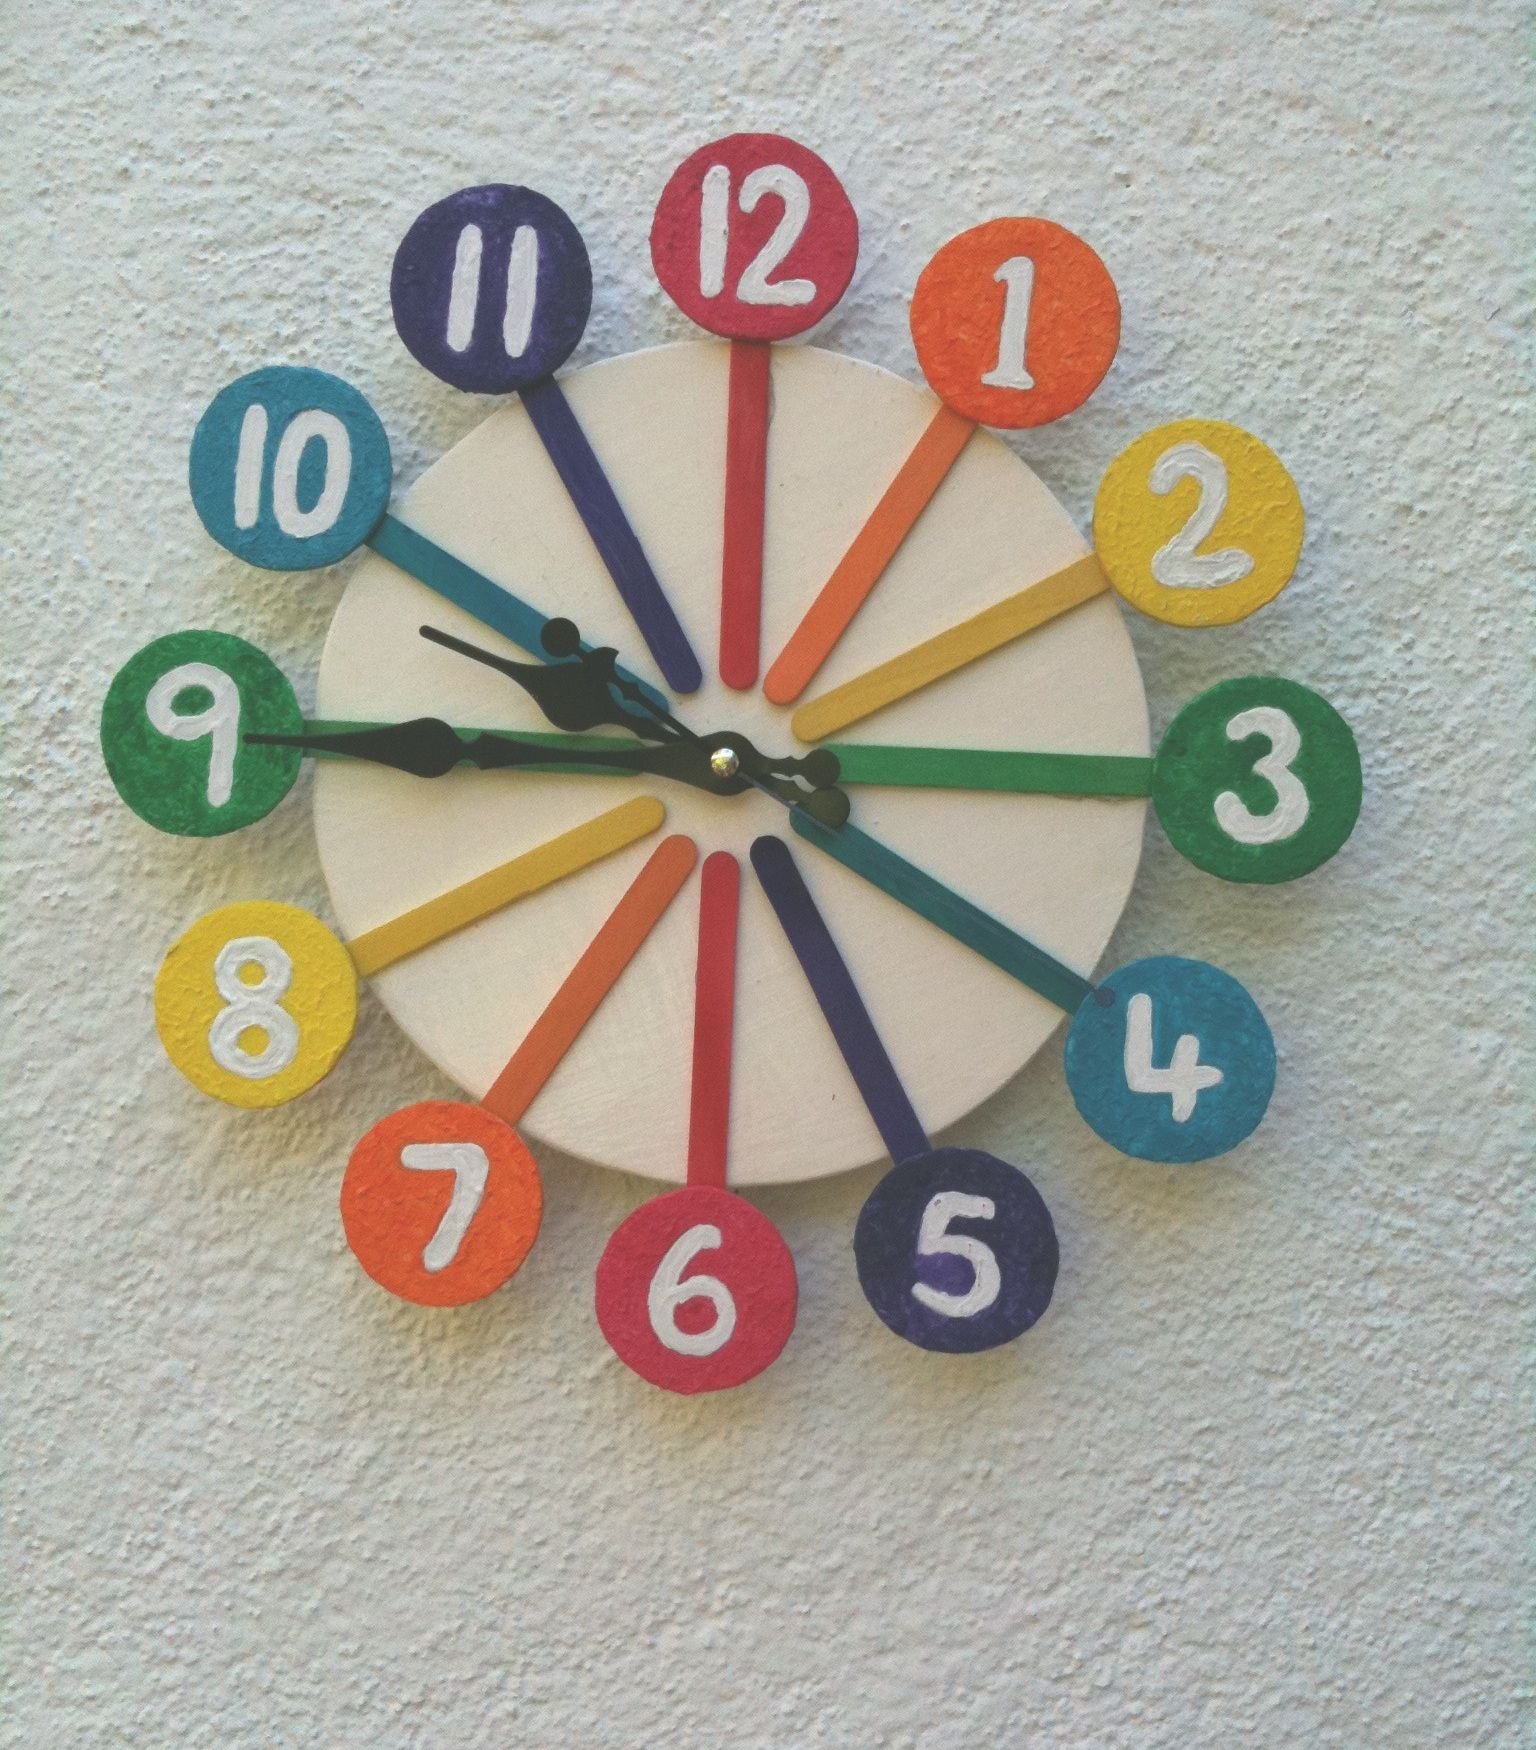 Часы для ребенка в детский сад. Часы из картона. Часы из картона для детей. Часы из картона в школу. Часы из картона в садик.